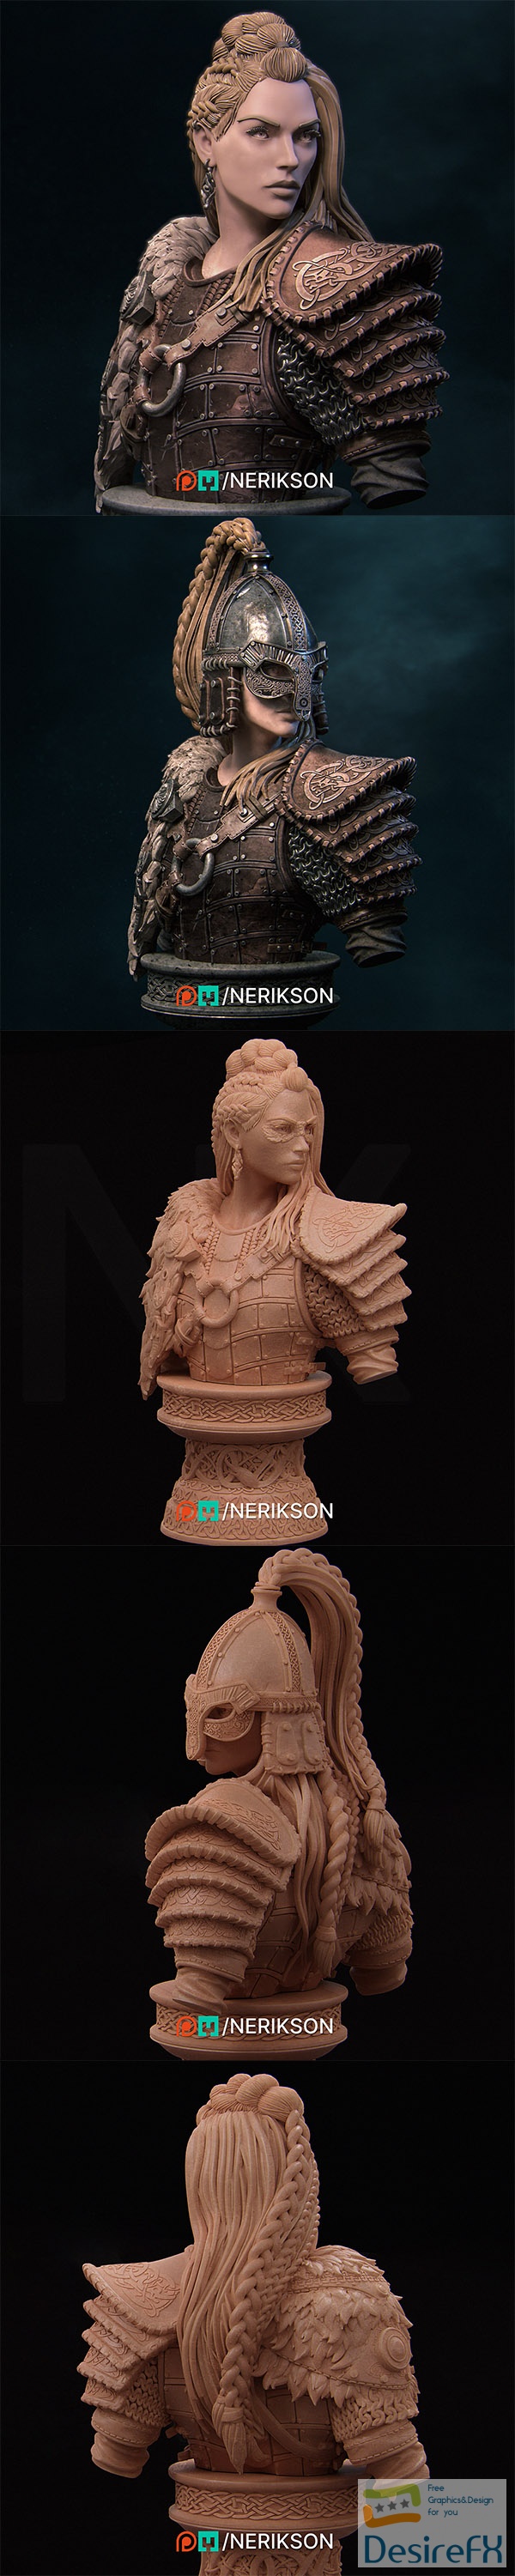 Nerikson – Thyra Bustst – 3D Print